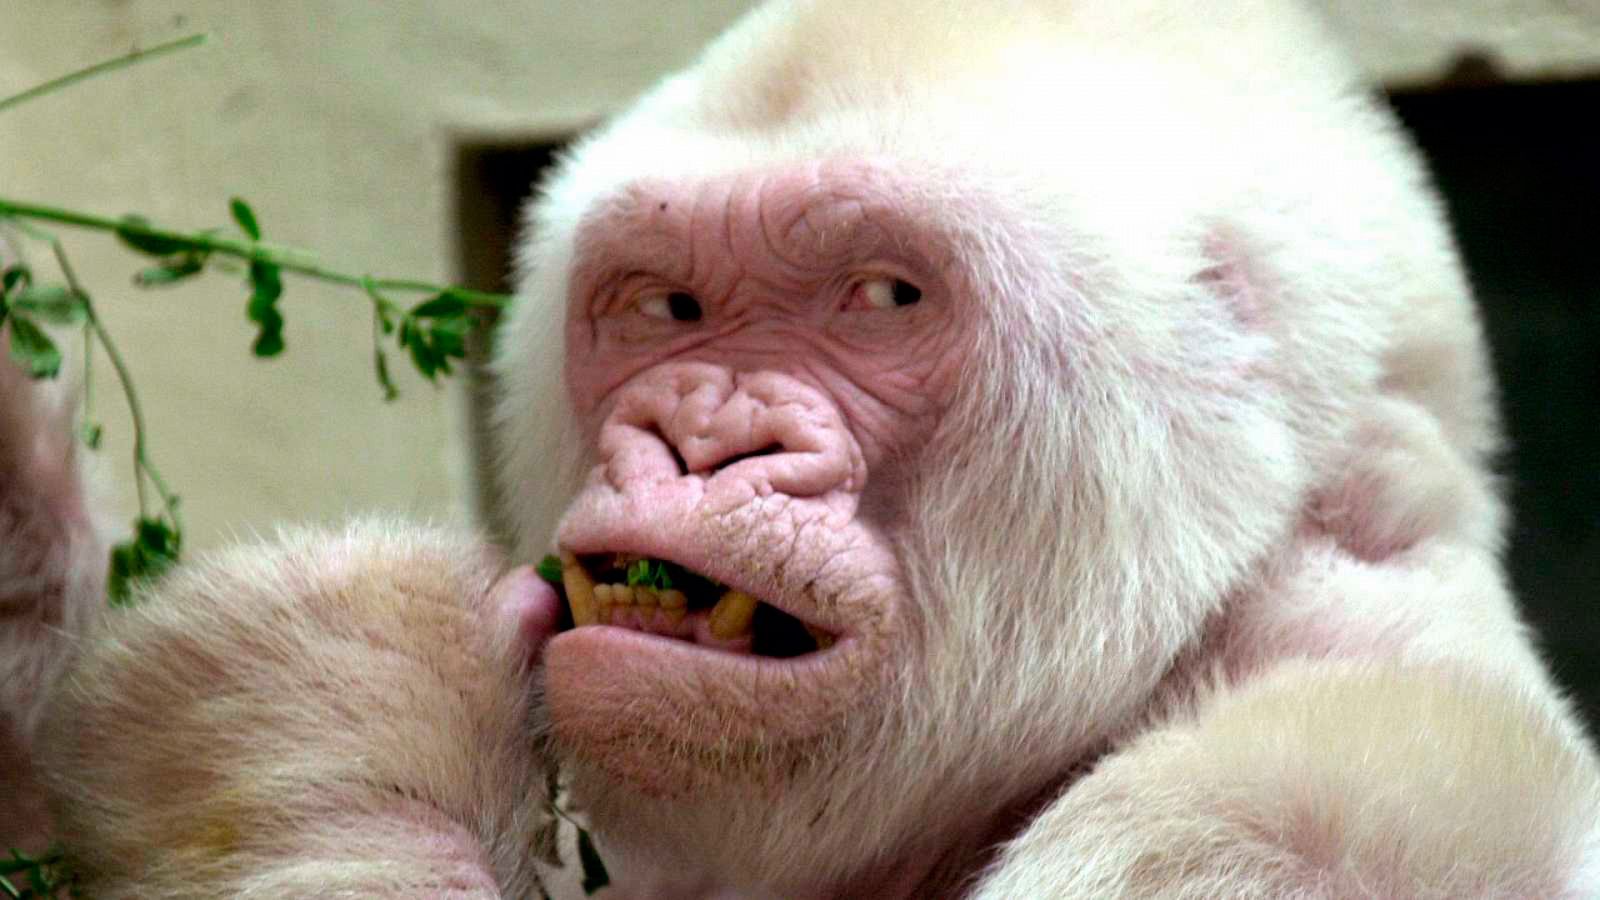 Floquet de Neu és l'únic goril·la albí conegut fins ara, i cap els seus fills no va heretar aquesta caractersítica